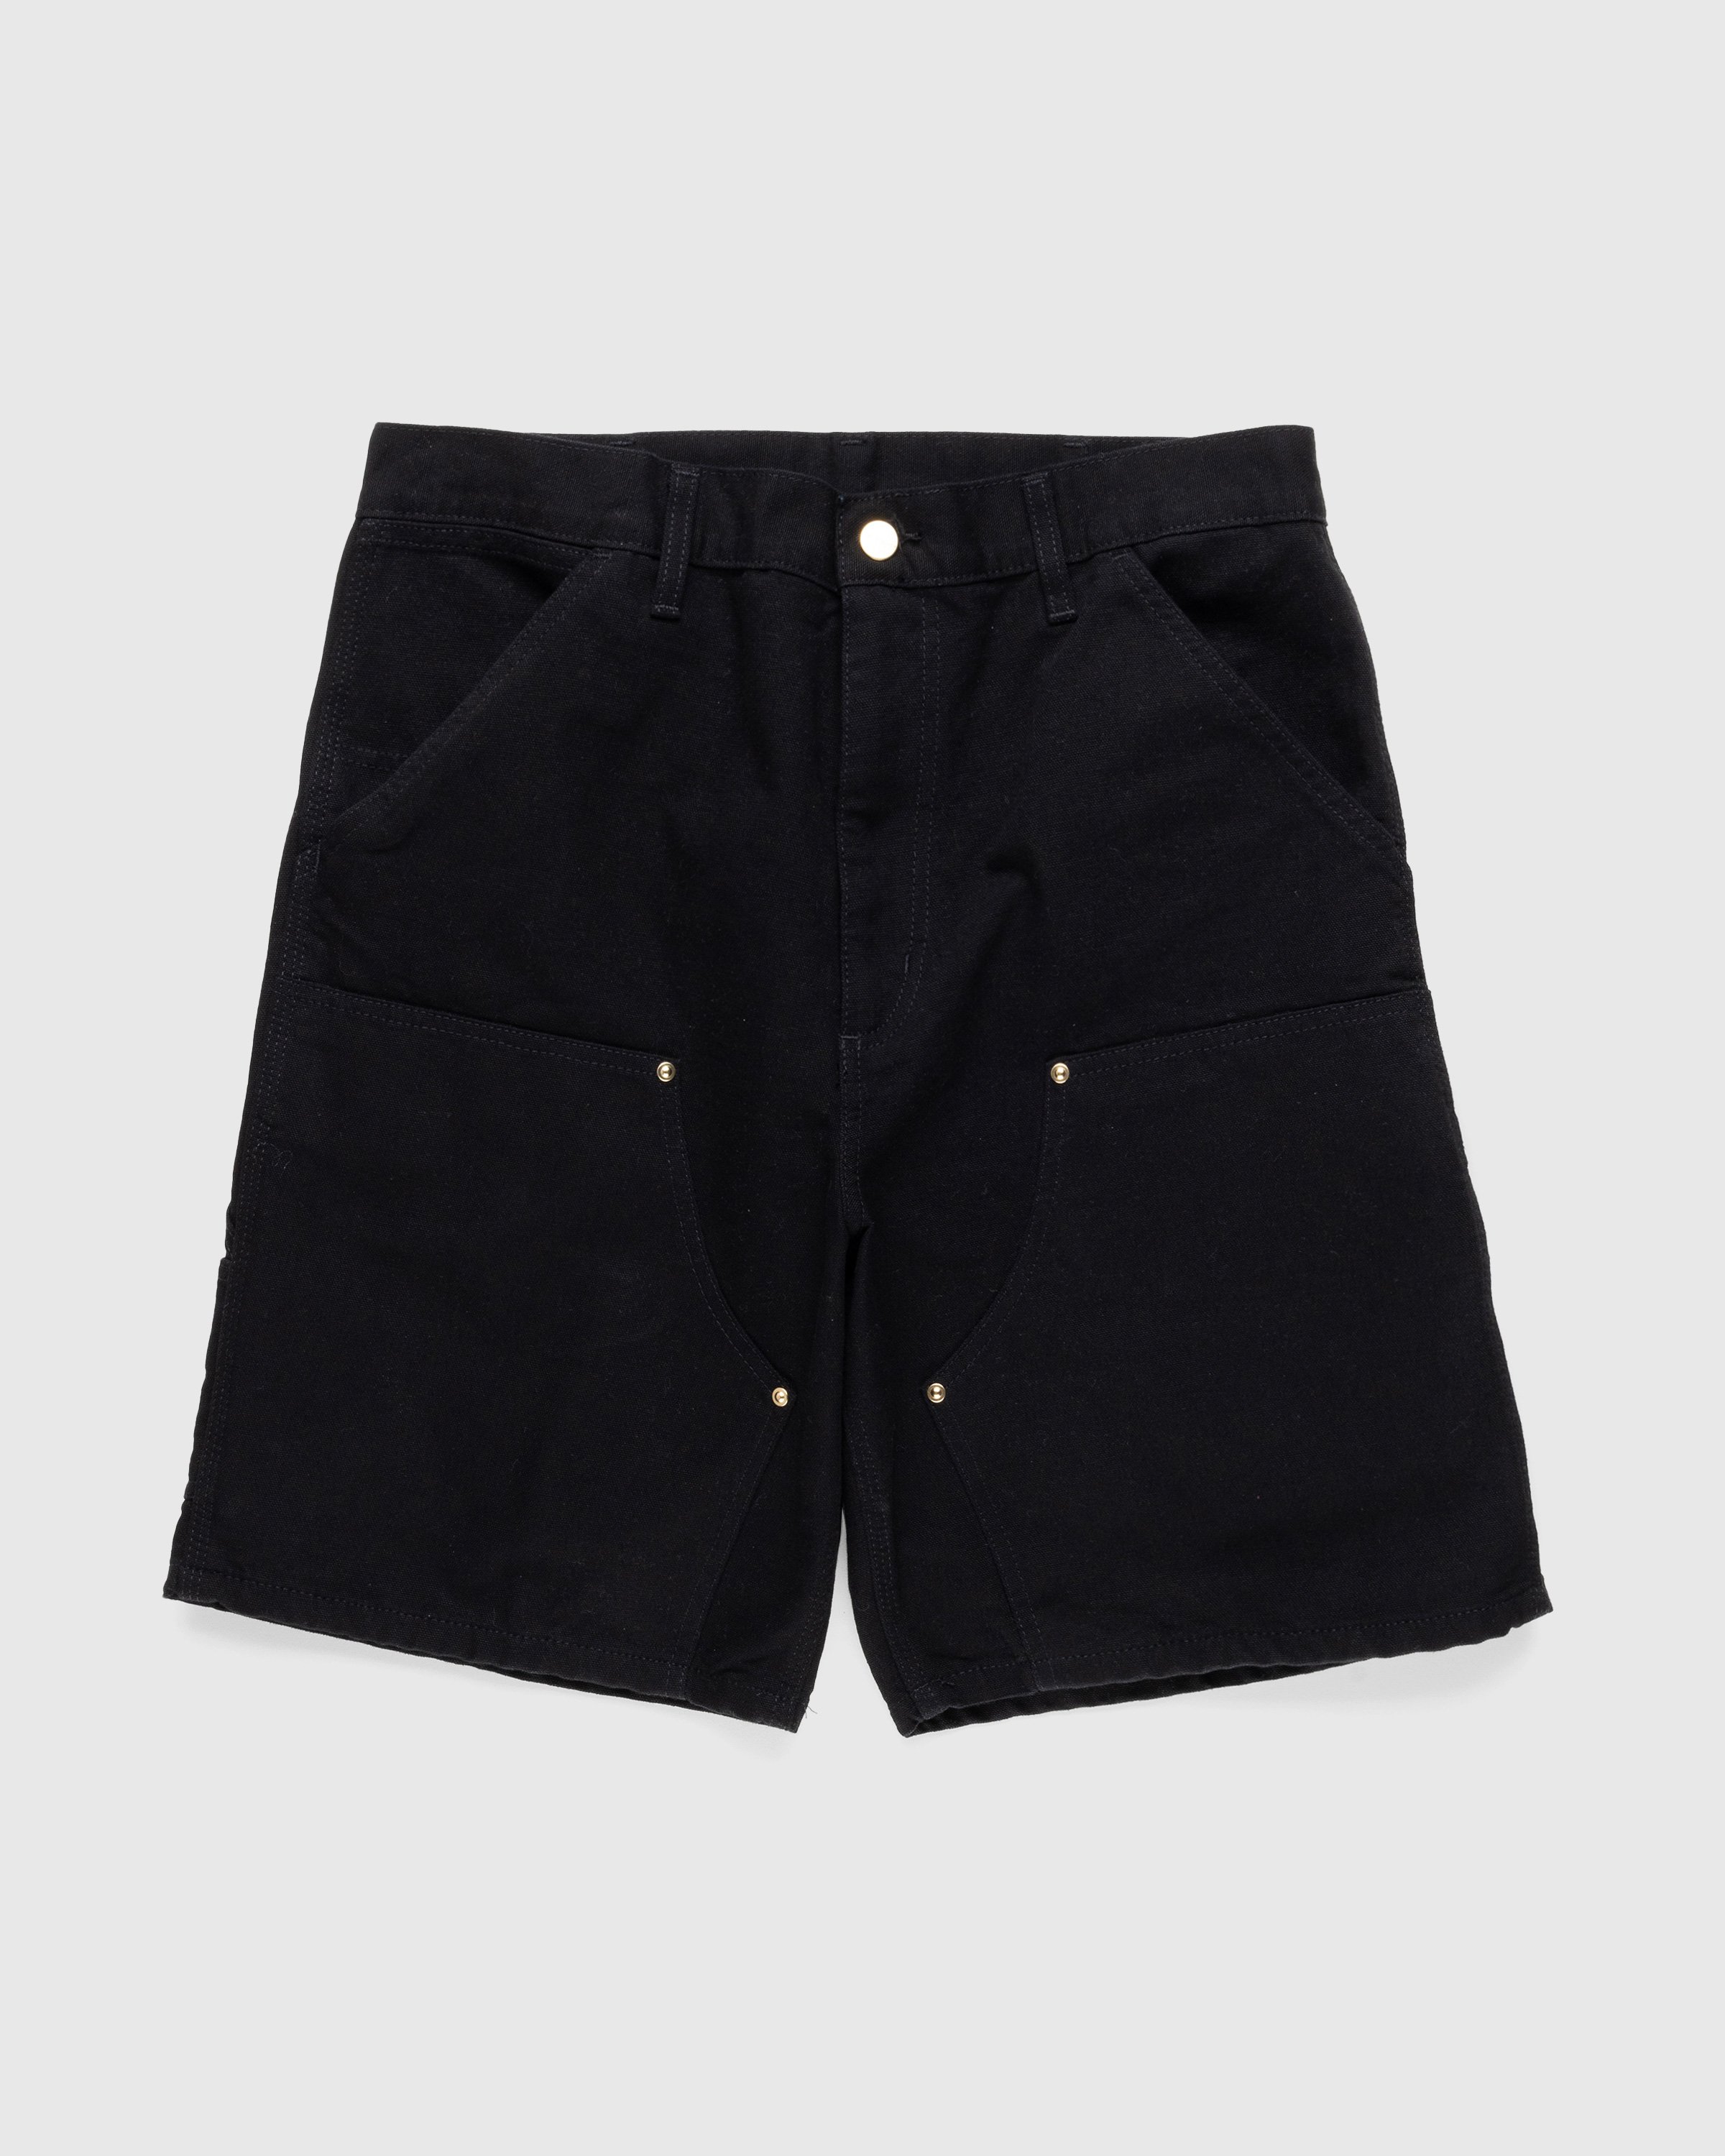 Carhartt WIP - Double Knee Short Rinsed Black - Clothing - Black - Image 1